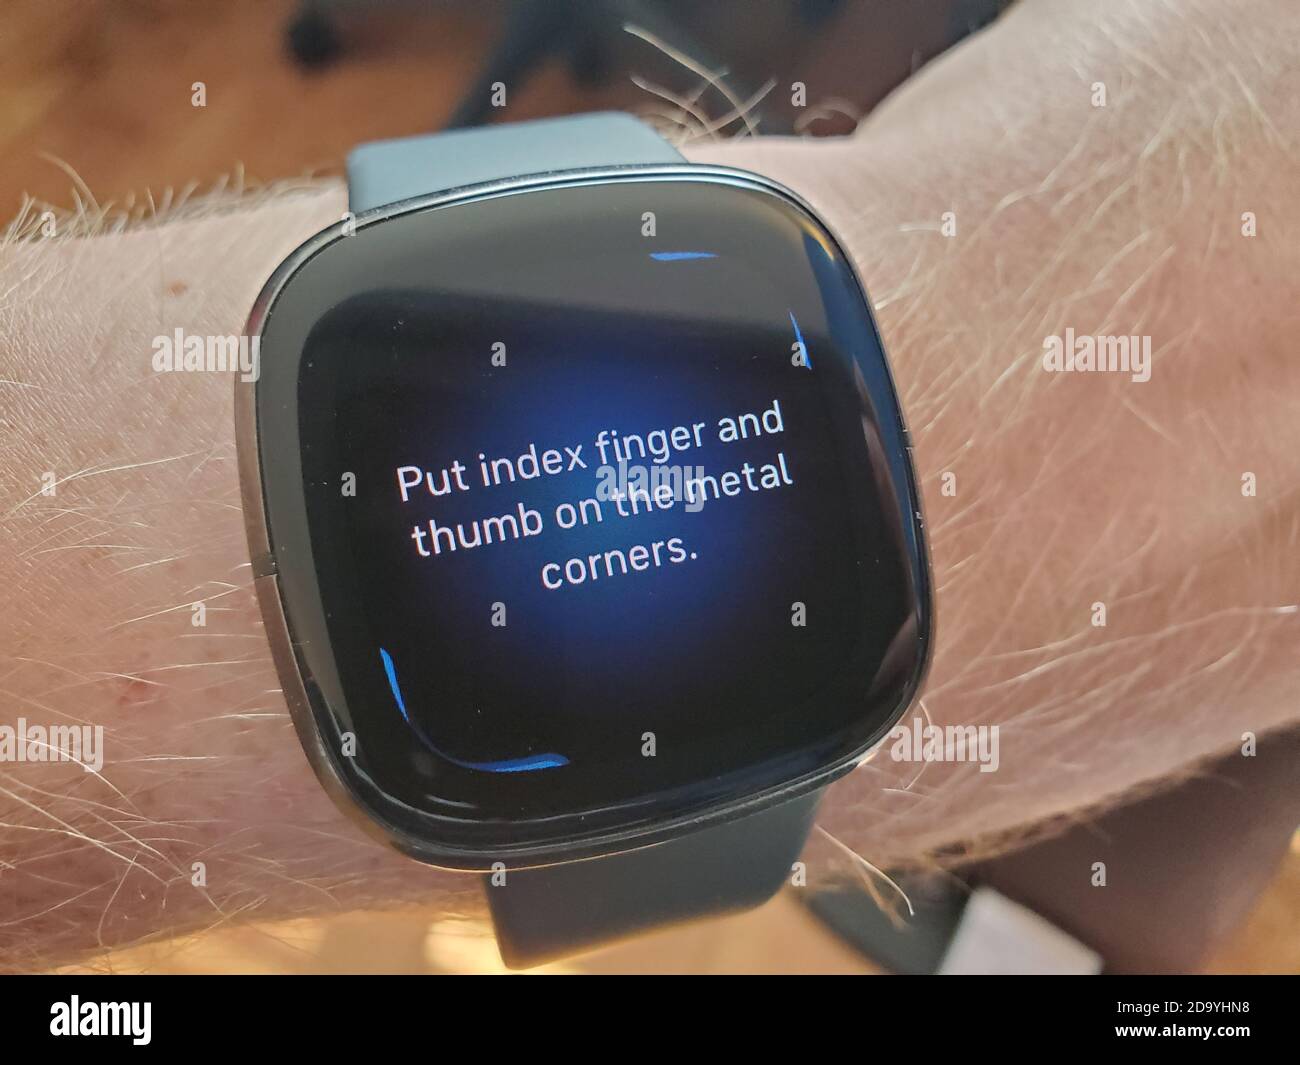 Orologio Fitbit Sense intelligente su braccio di un uomo, che mostra ECG funzione di salute del cuore, San Ramon, California, 8 ottobre 2020. () Foto Stock